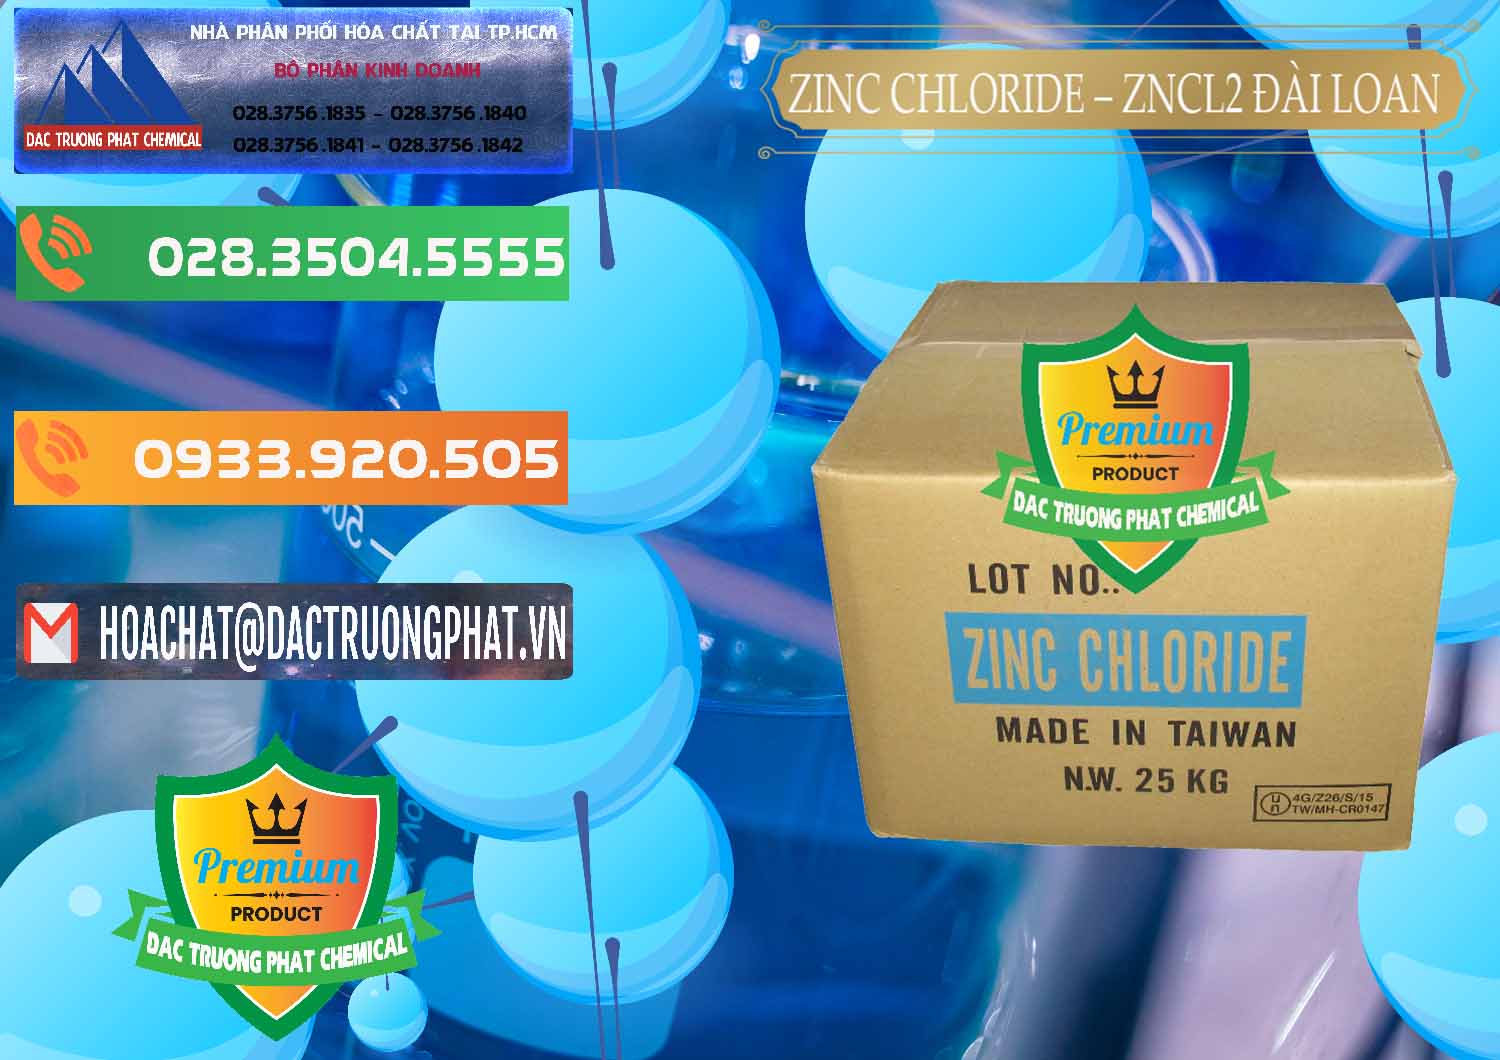 Cty nhập khẩu và bán Zinc Chloride - ZNCL2 96% Đài Loan Taiwan - 0178 - Nhà nhập khẩu và cung cấp hóa chất tại TP.HCM - hoachatxulynuoc.com.vn